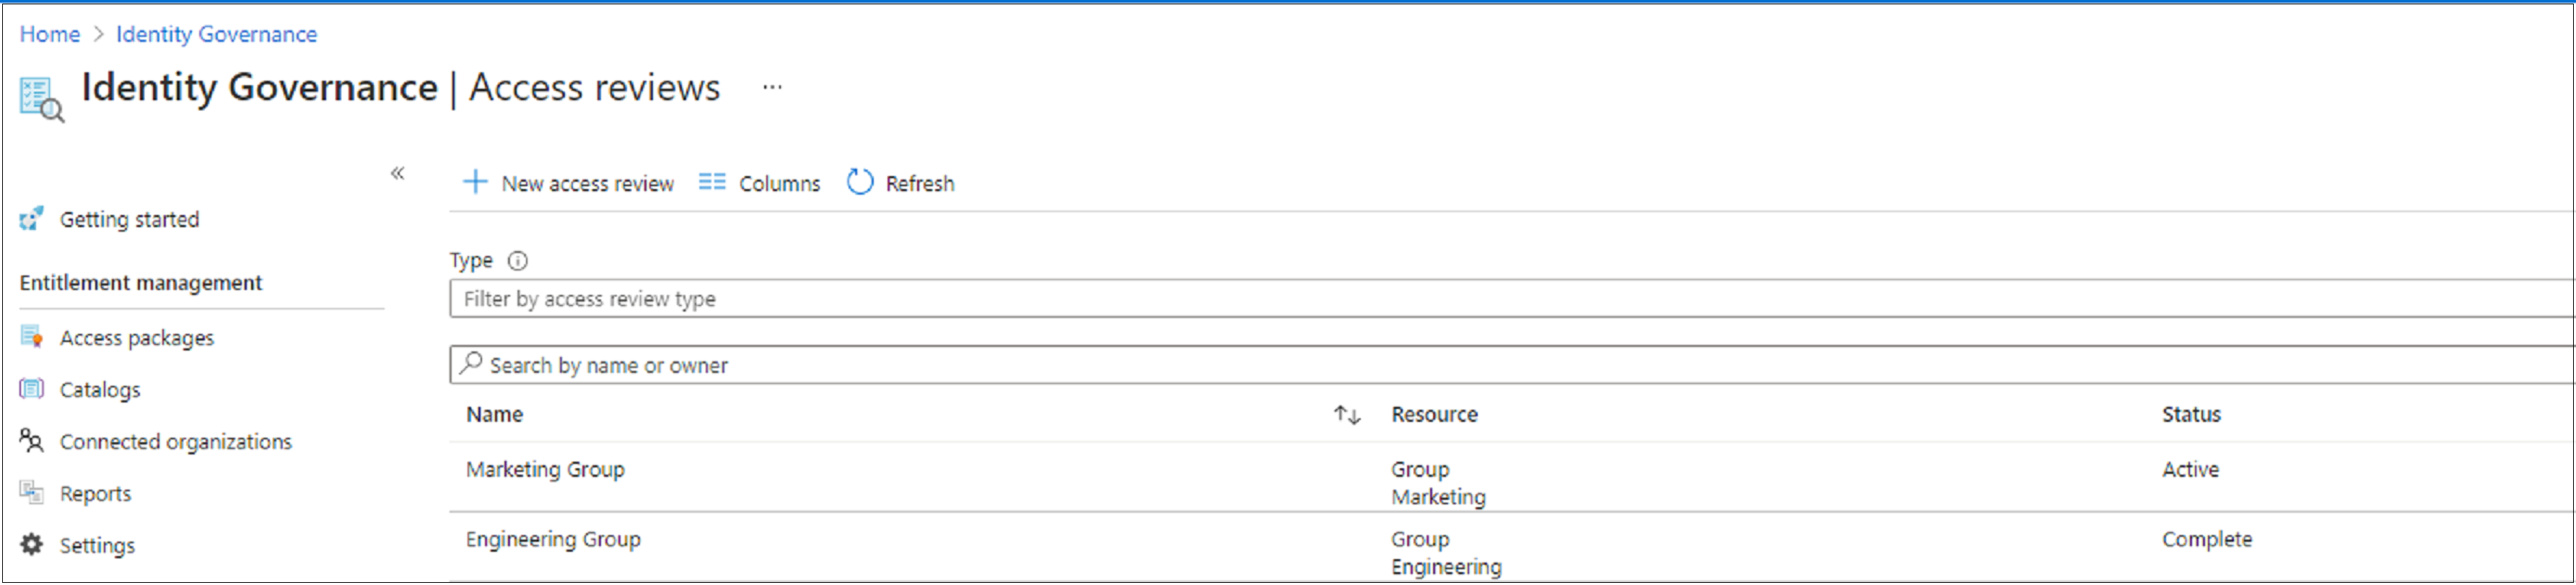 Képernyőkép a hozzáférési felülvizsgálatok listájáról és állapotukról.